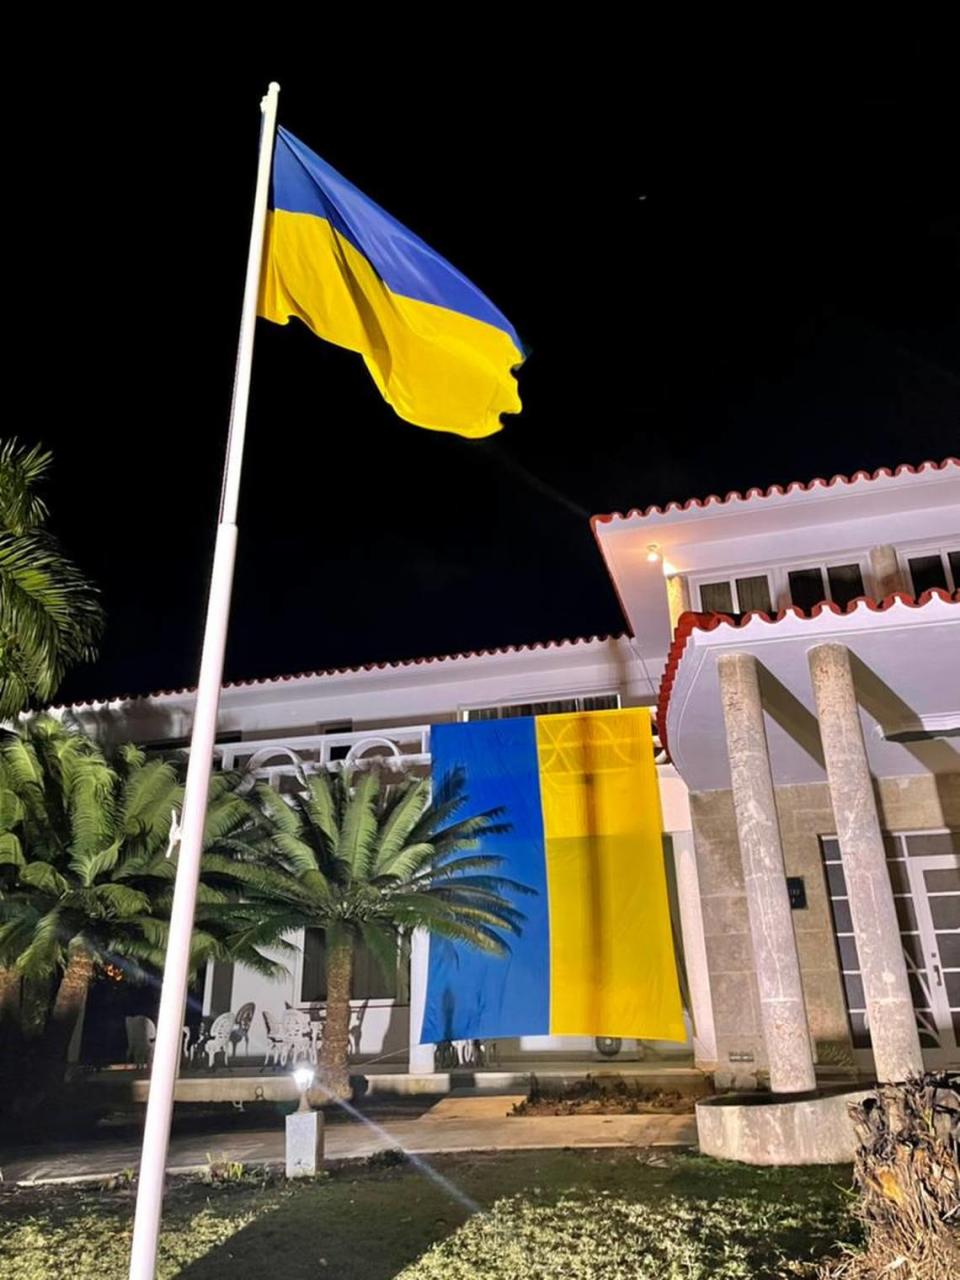 The Embassy of Ukraine in Havana, Cuba.